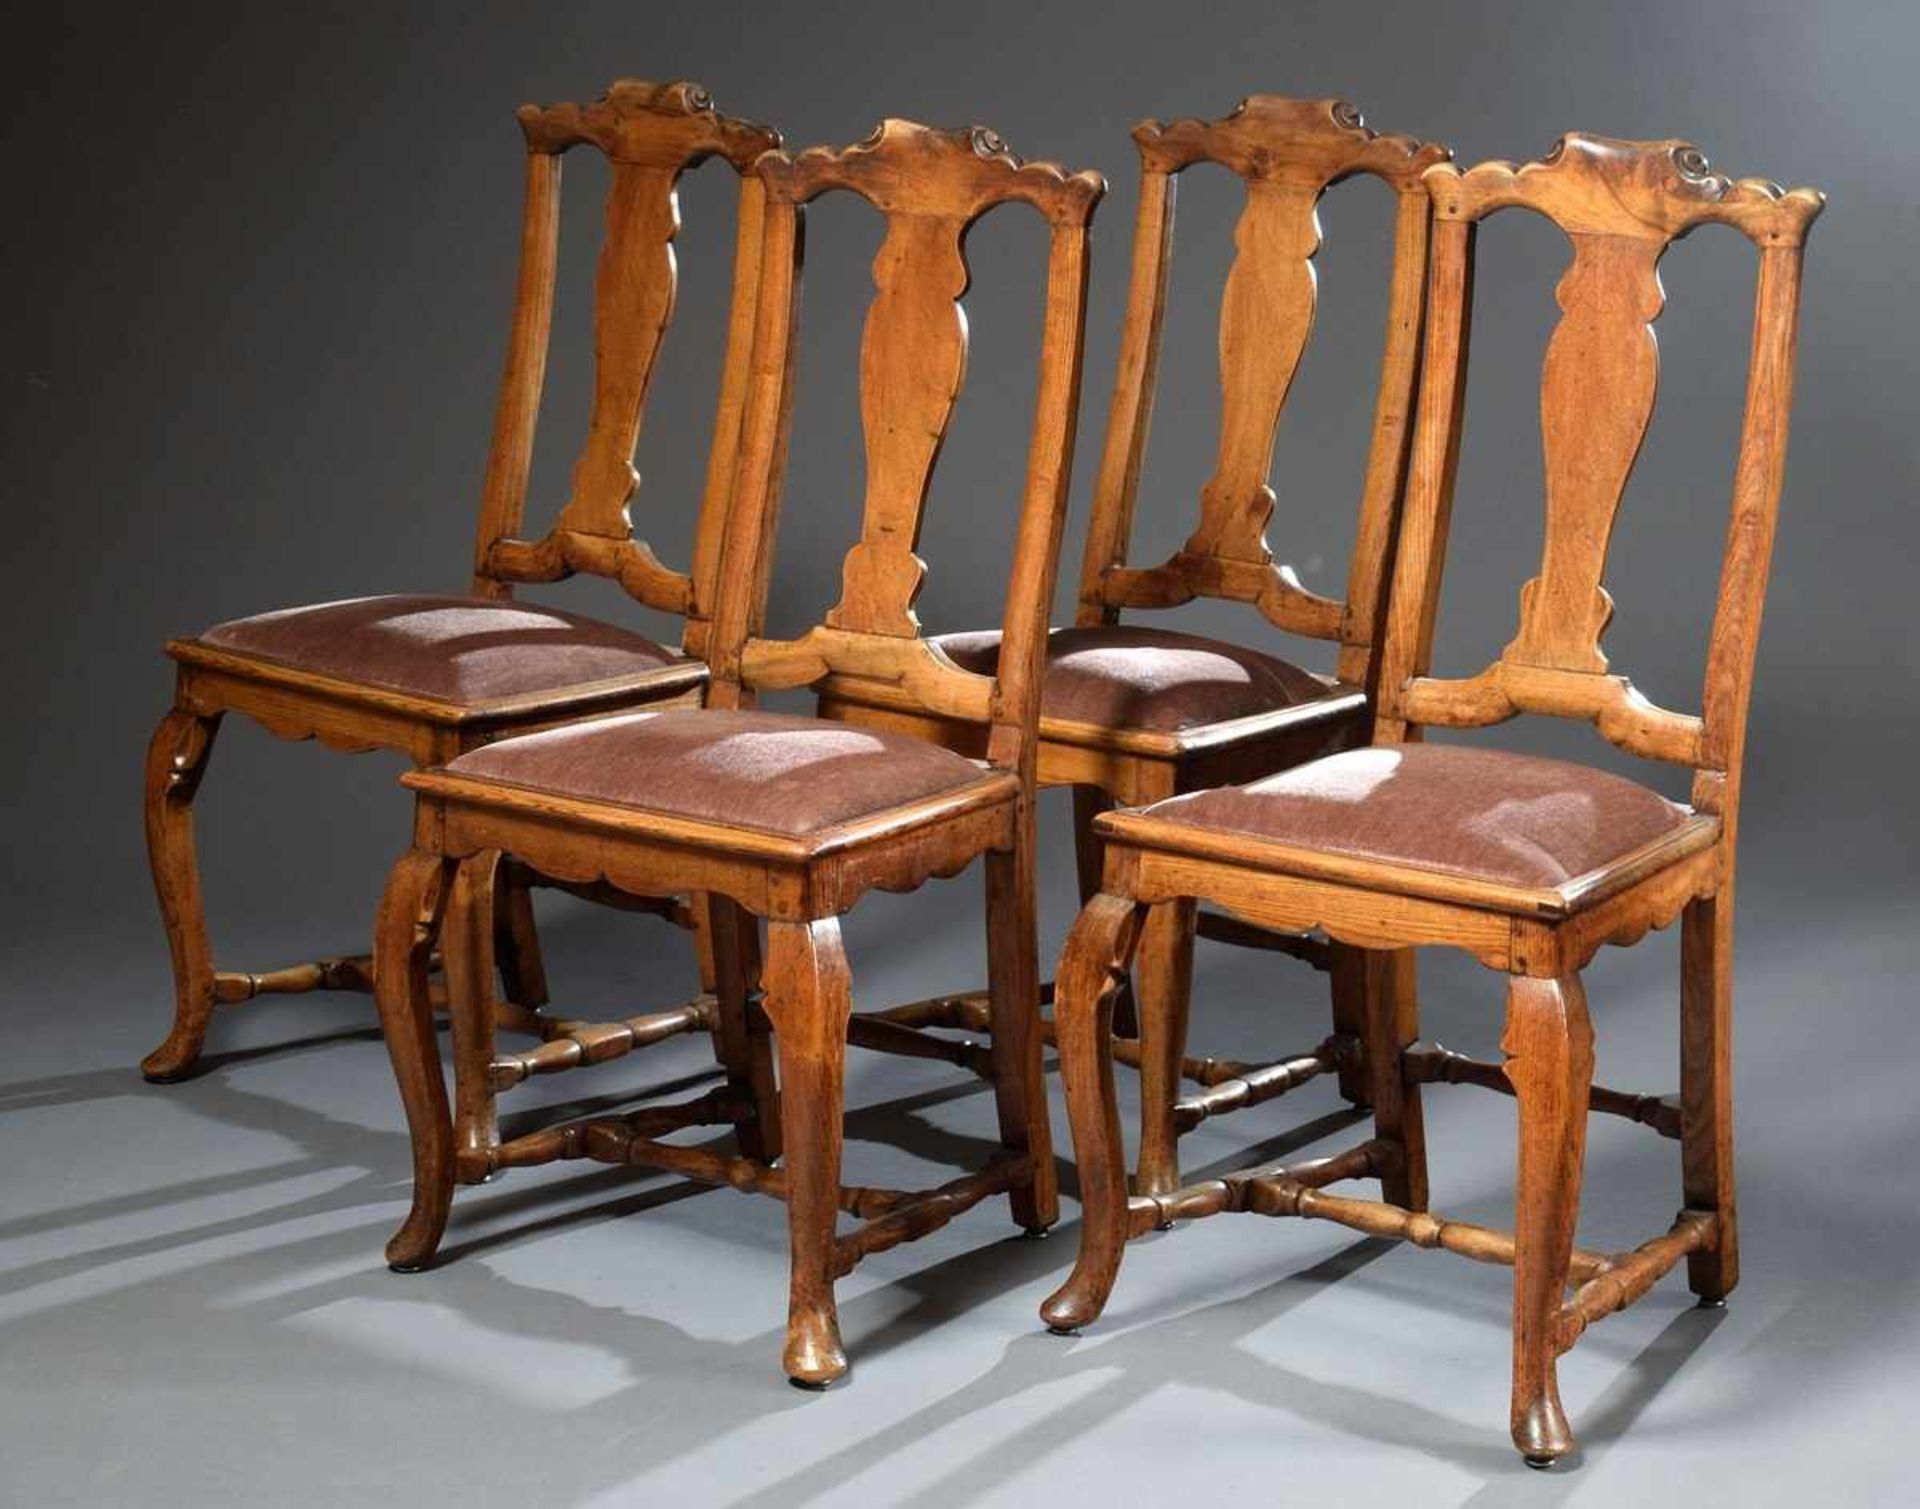 4 Rustikale Barockstühle mit Stollengestell und Griffvolute an der Lehne, Buche mit